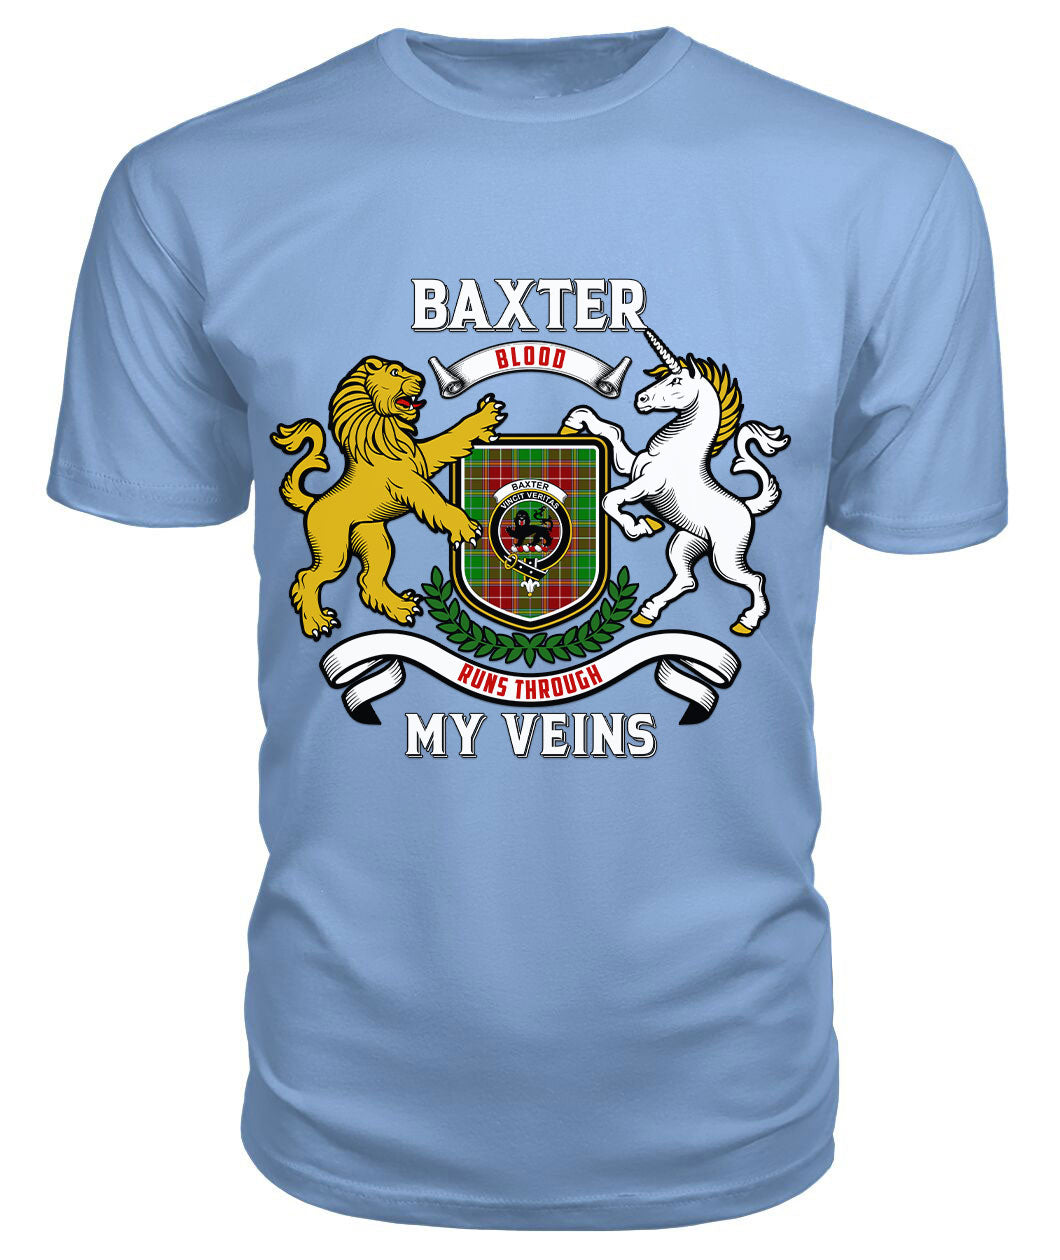 Baxter Modern Tartan Crest 2D T-shirt - Blood Runs Through My Veins Style